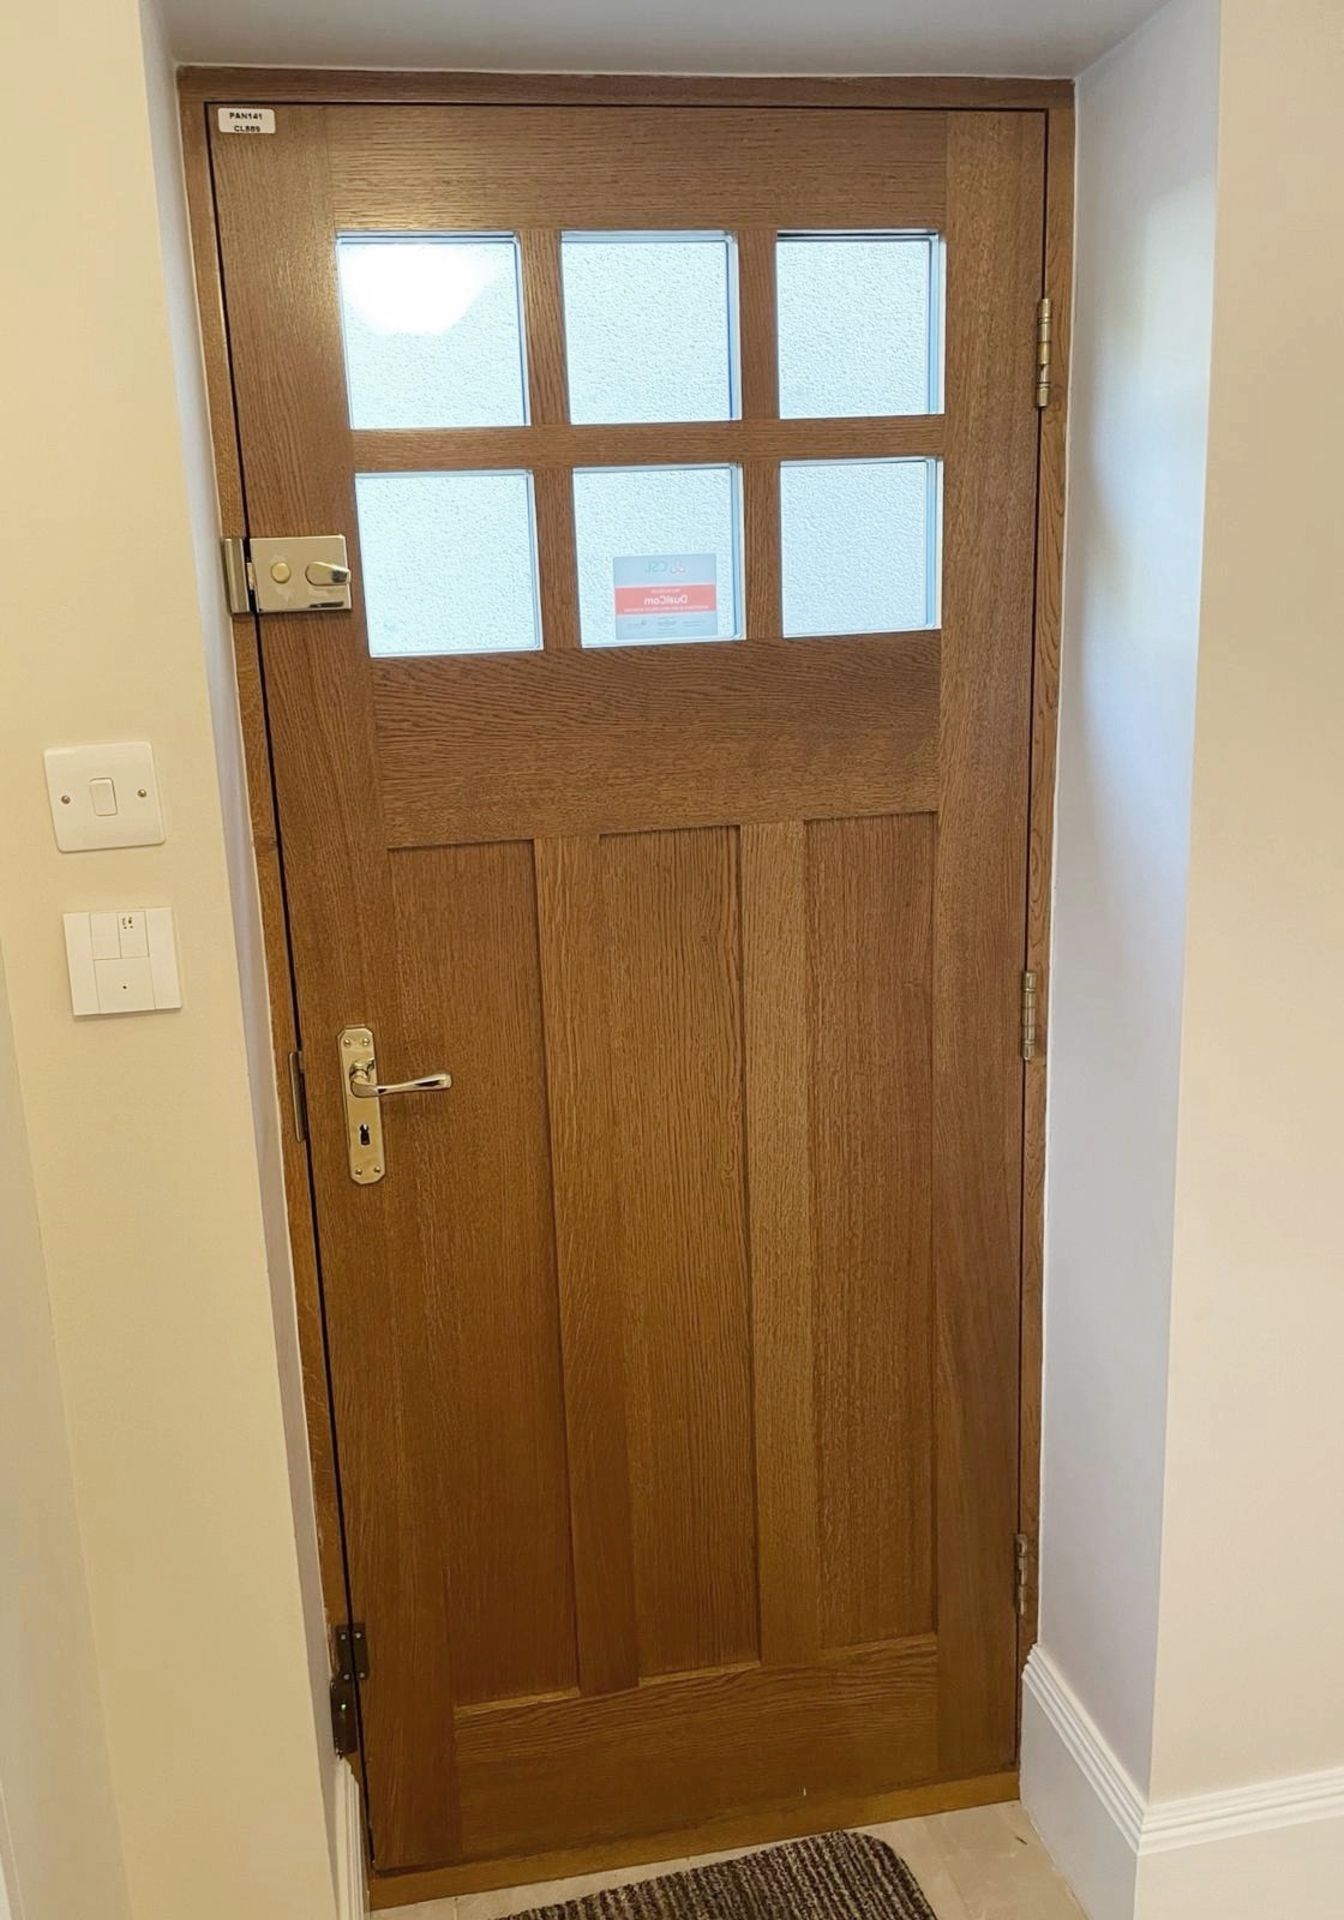 1 x Solid Wood Lockable Glazed External Side Door - Includes Hinges & Handles - Ref: PAN141 - NO VAT - Image 2 of 17